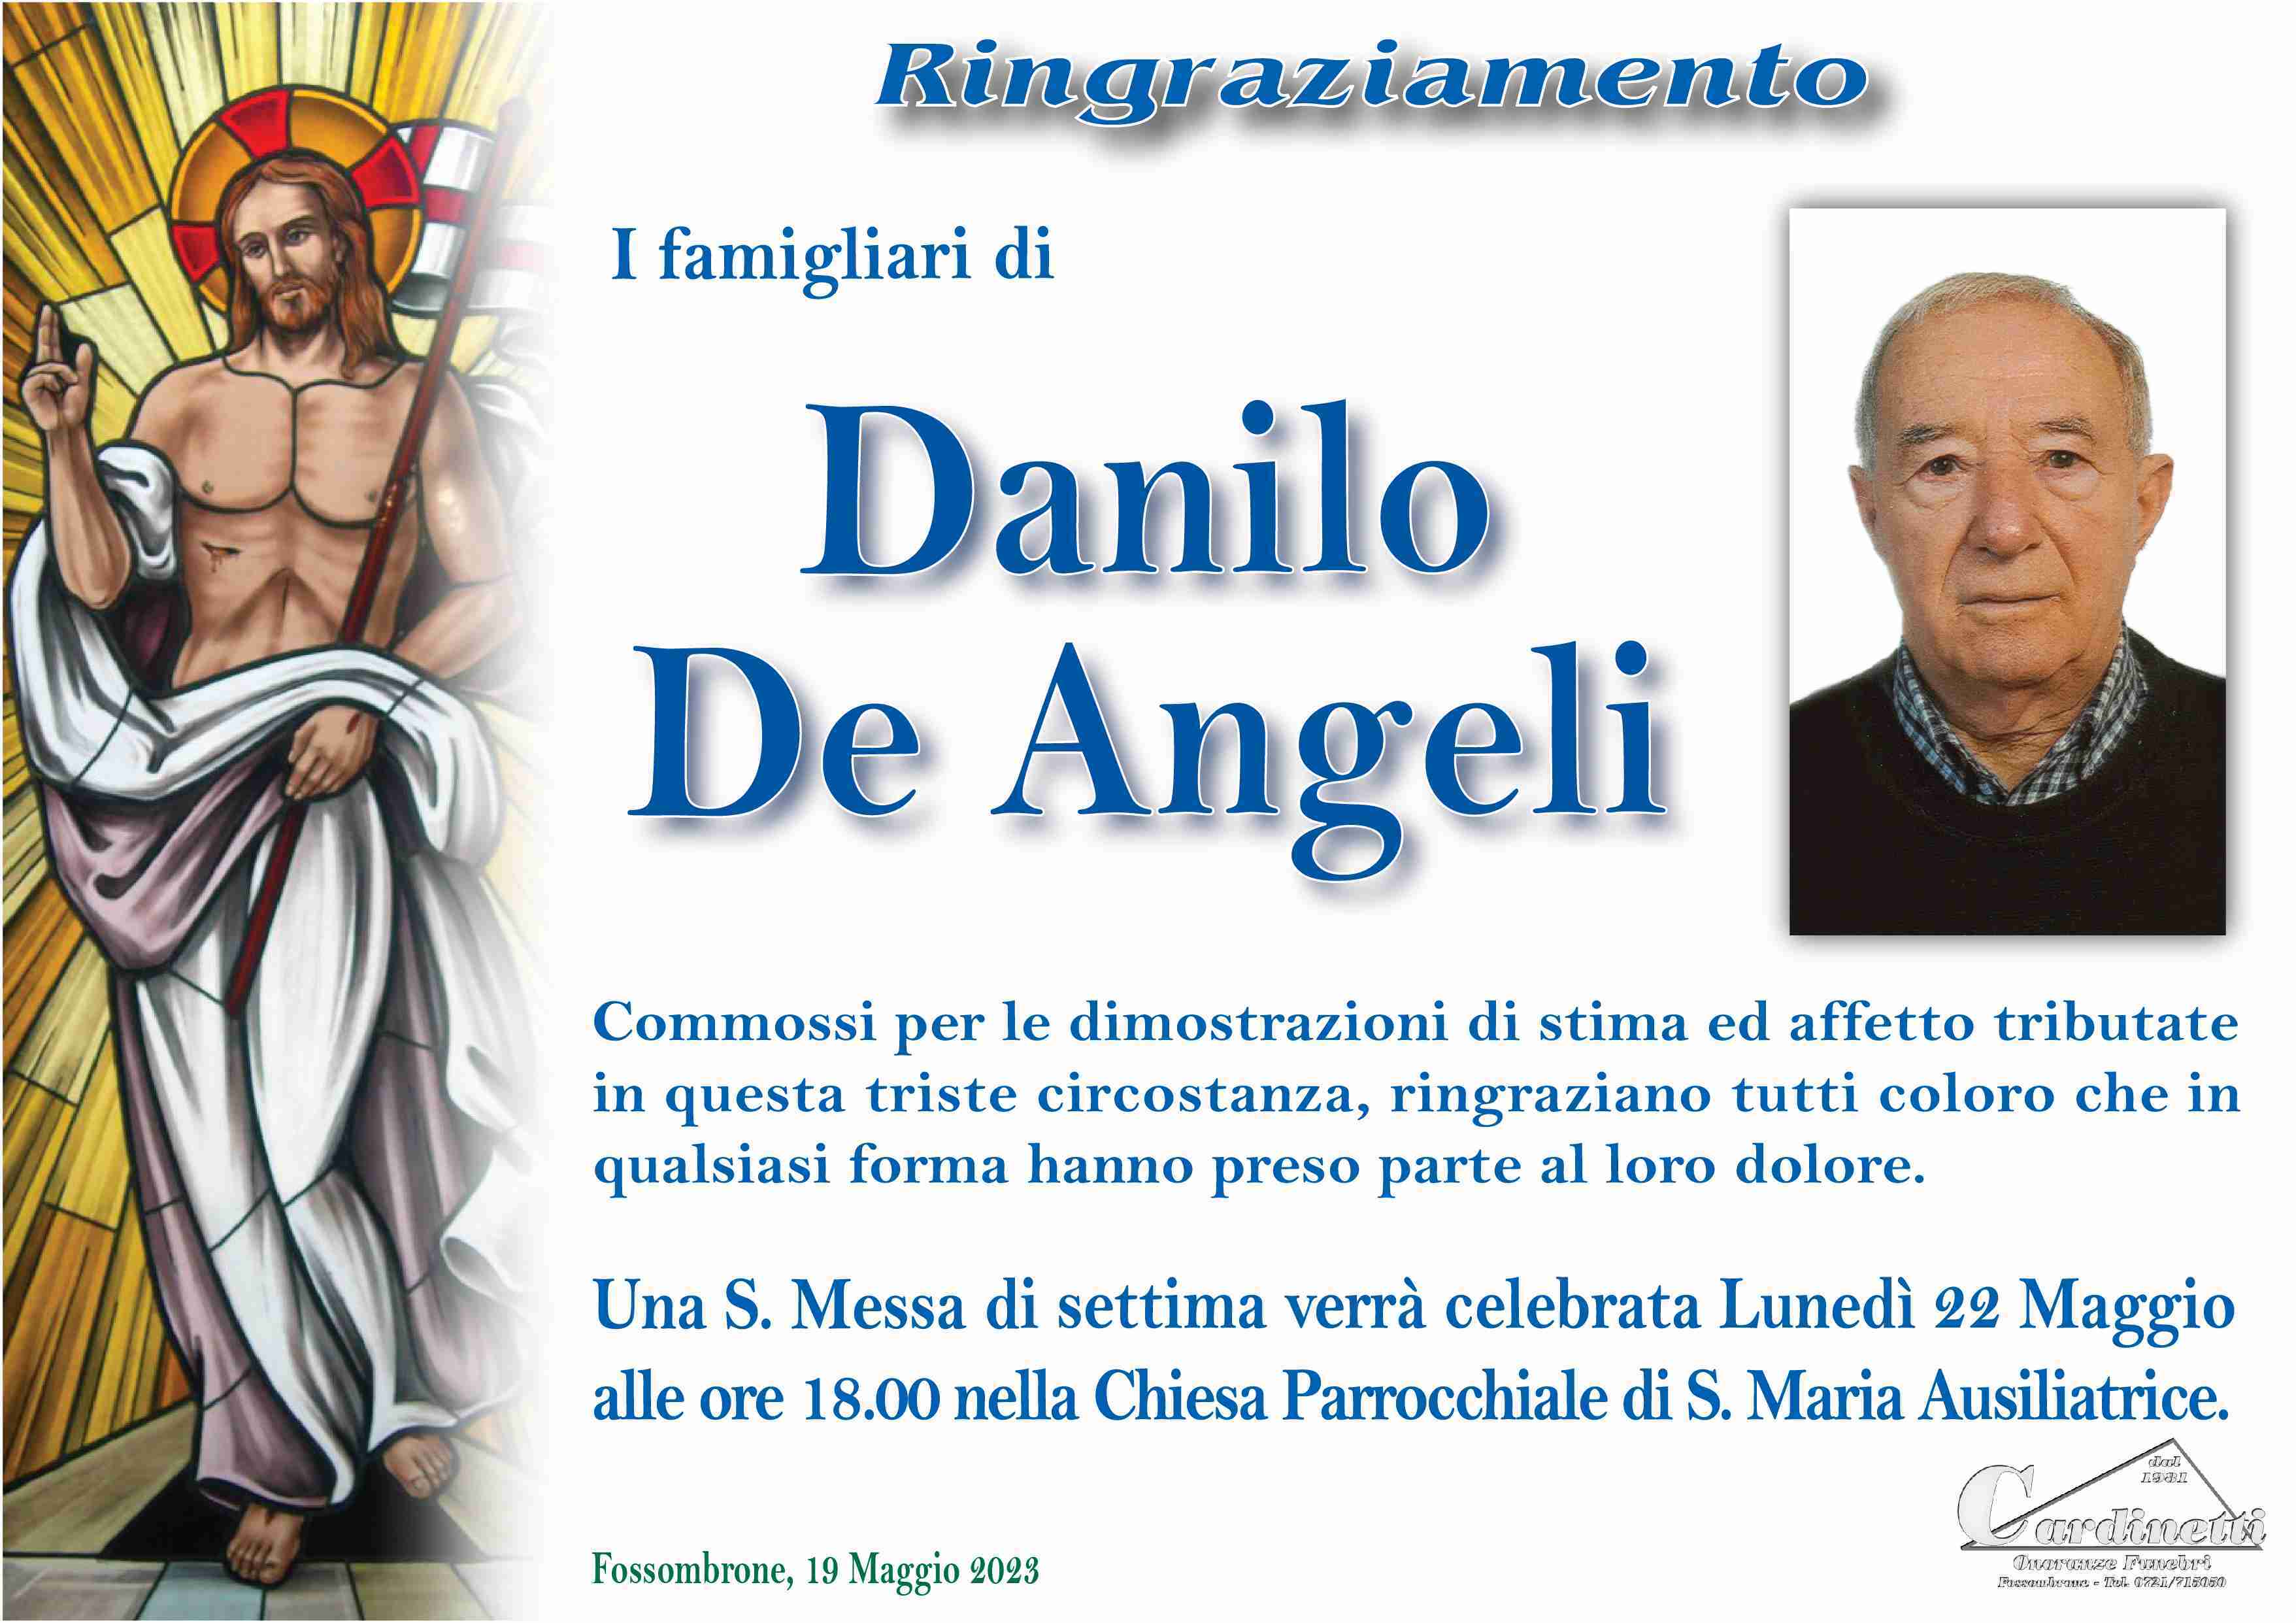 Danilo De Angeli